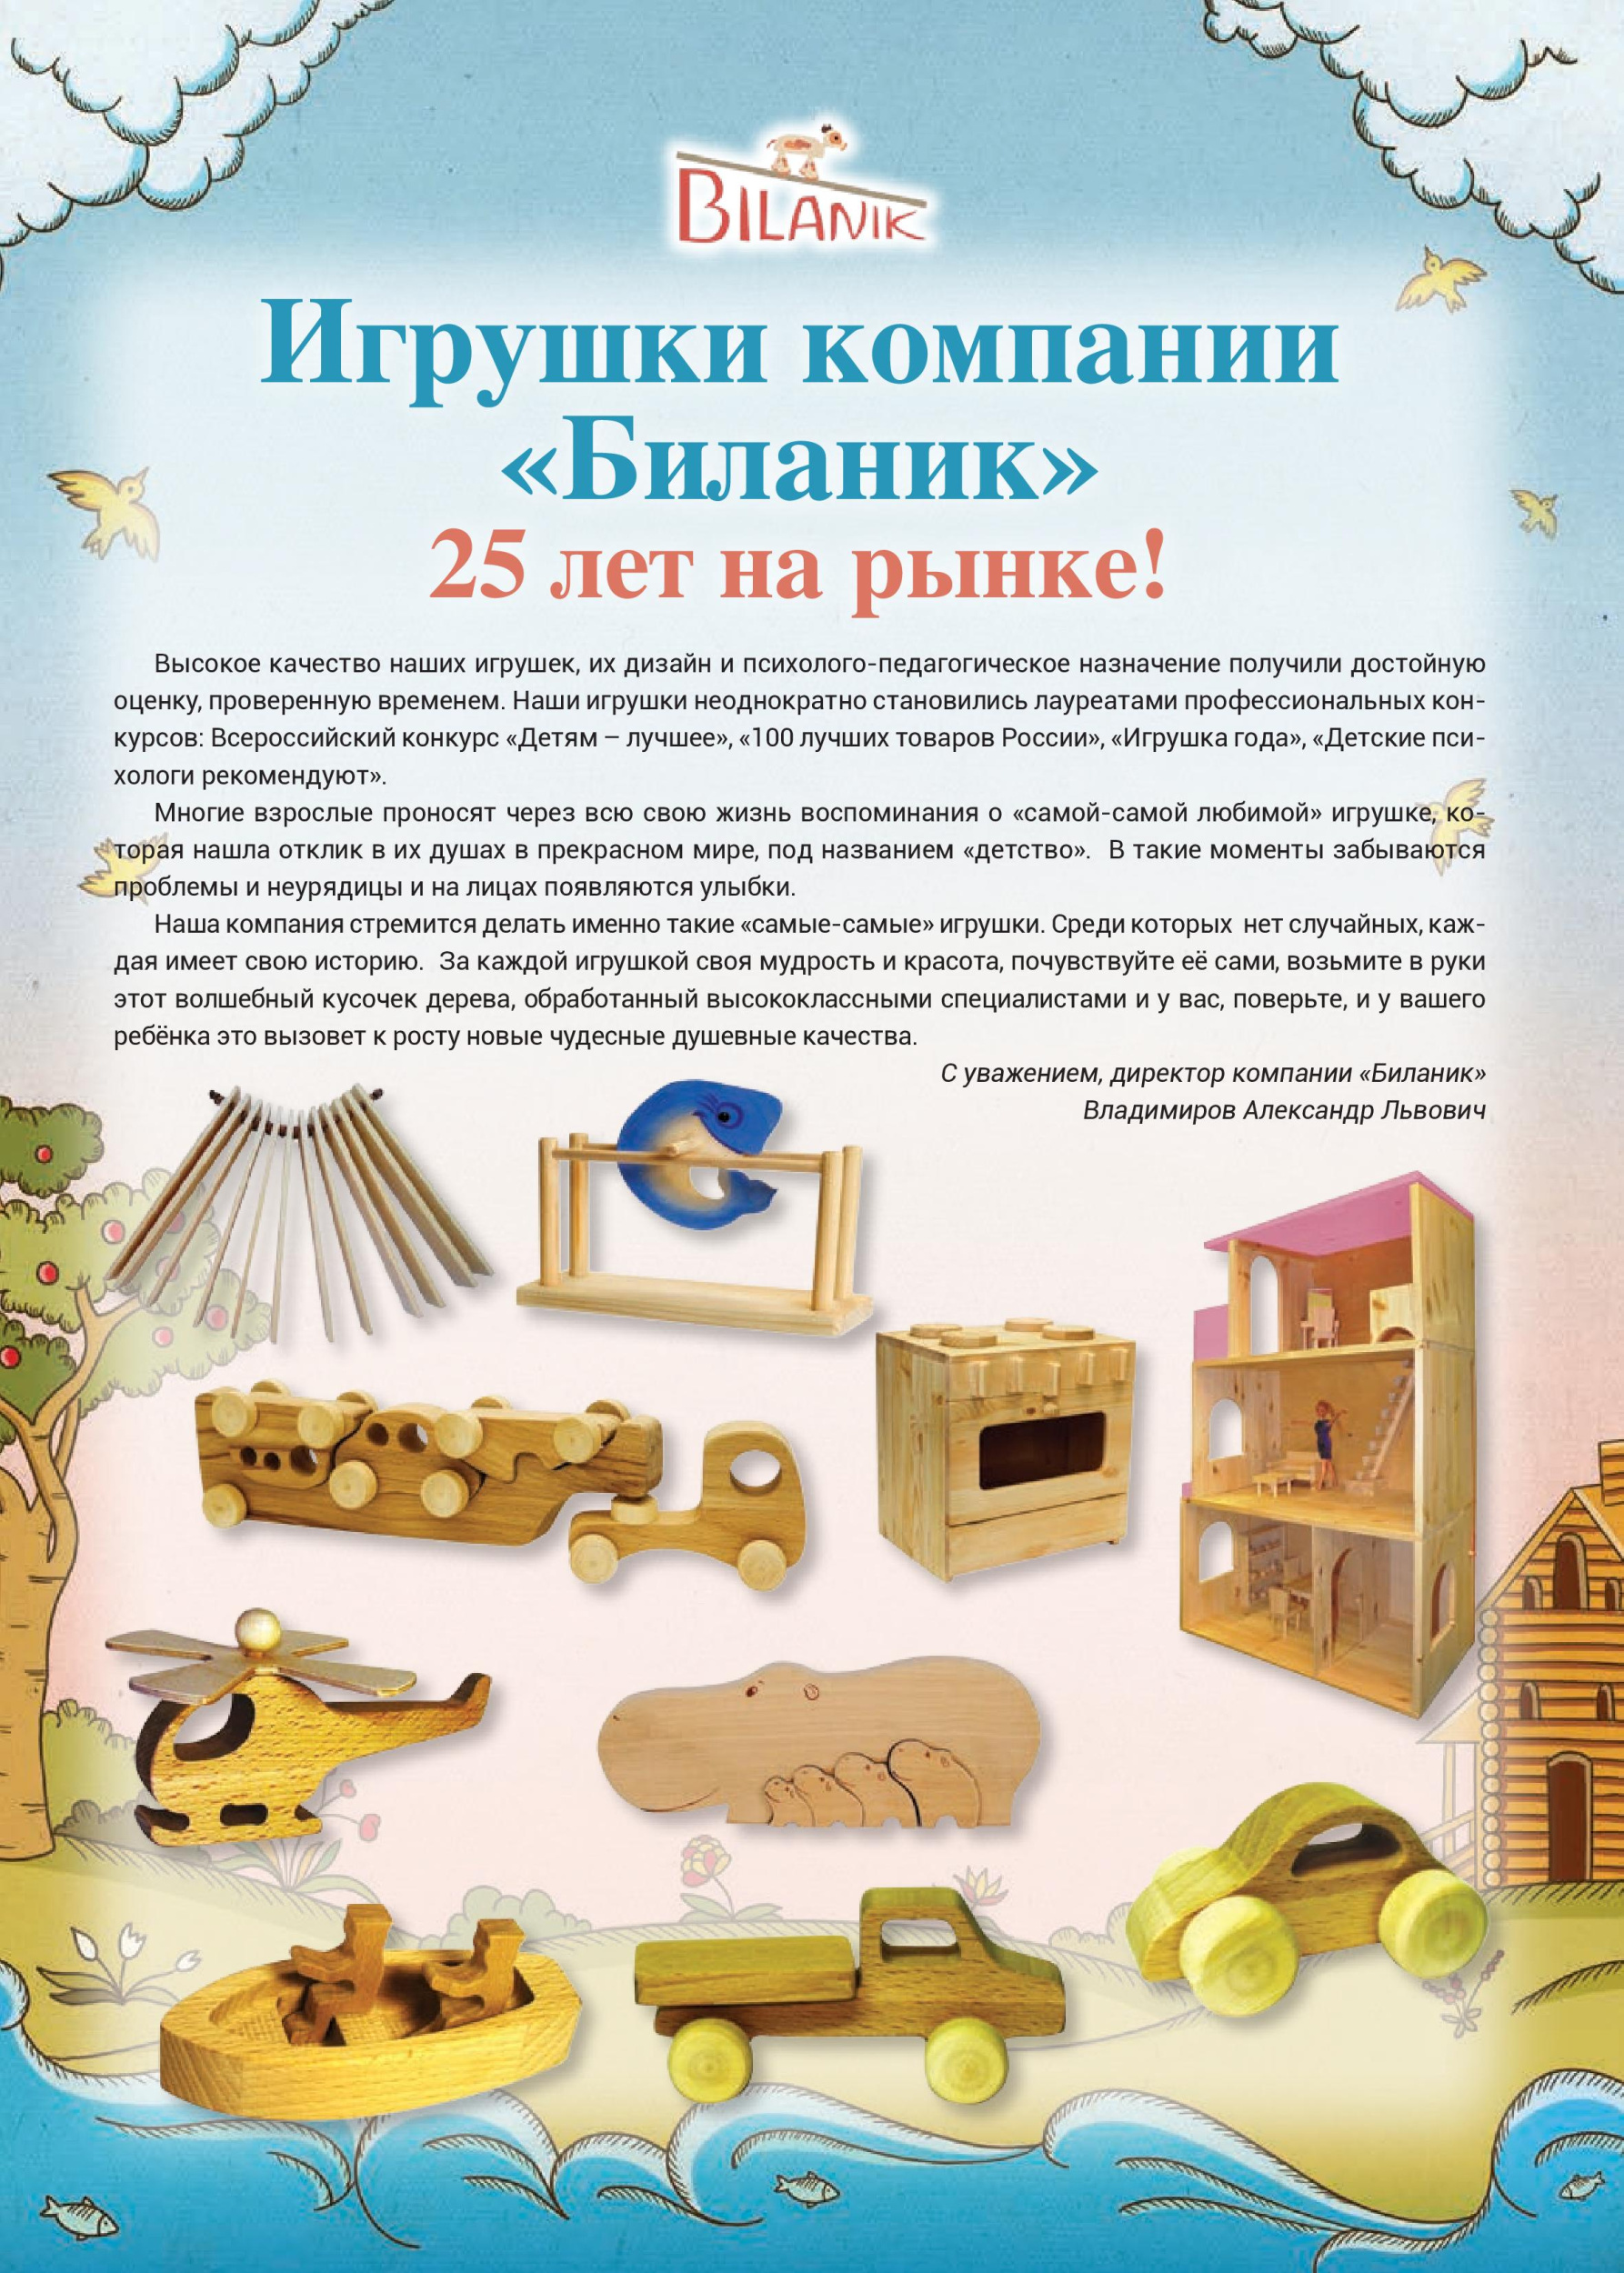 Качественные игрушки компании «Биланик»